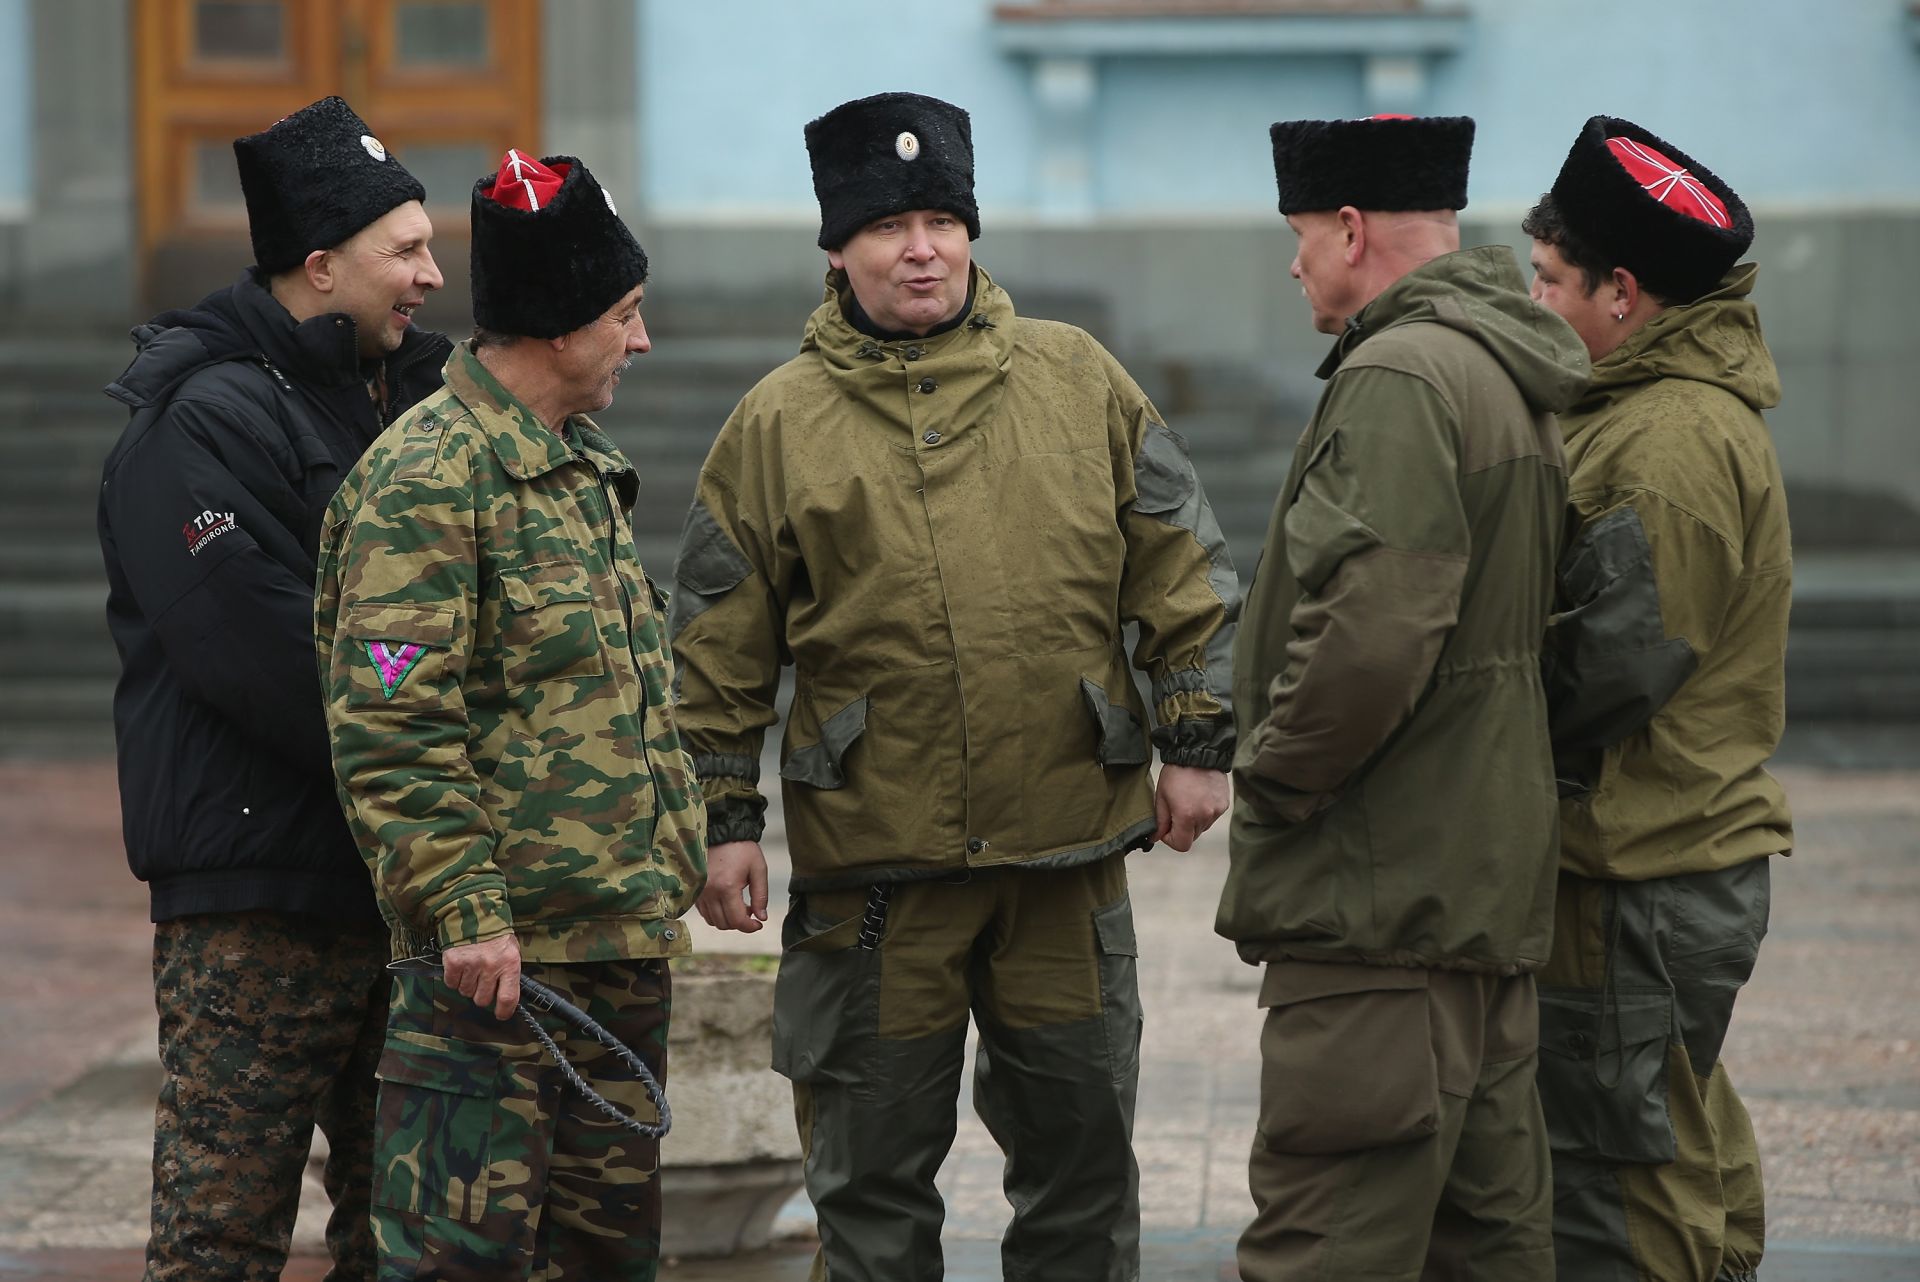 КРИМ, 7 март: Руските казаци, някои от които тежко въоръжени, поемат охрана на пътни пунктове, гранични пунктове и други ключови съоръжения, които преди това са били охранявани от местни проруски бойци в Крим през последните дни